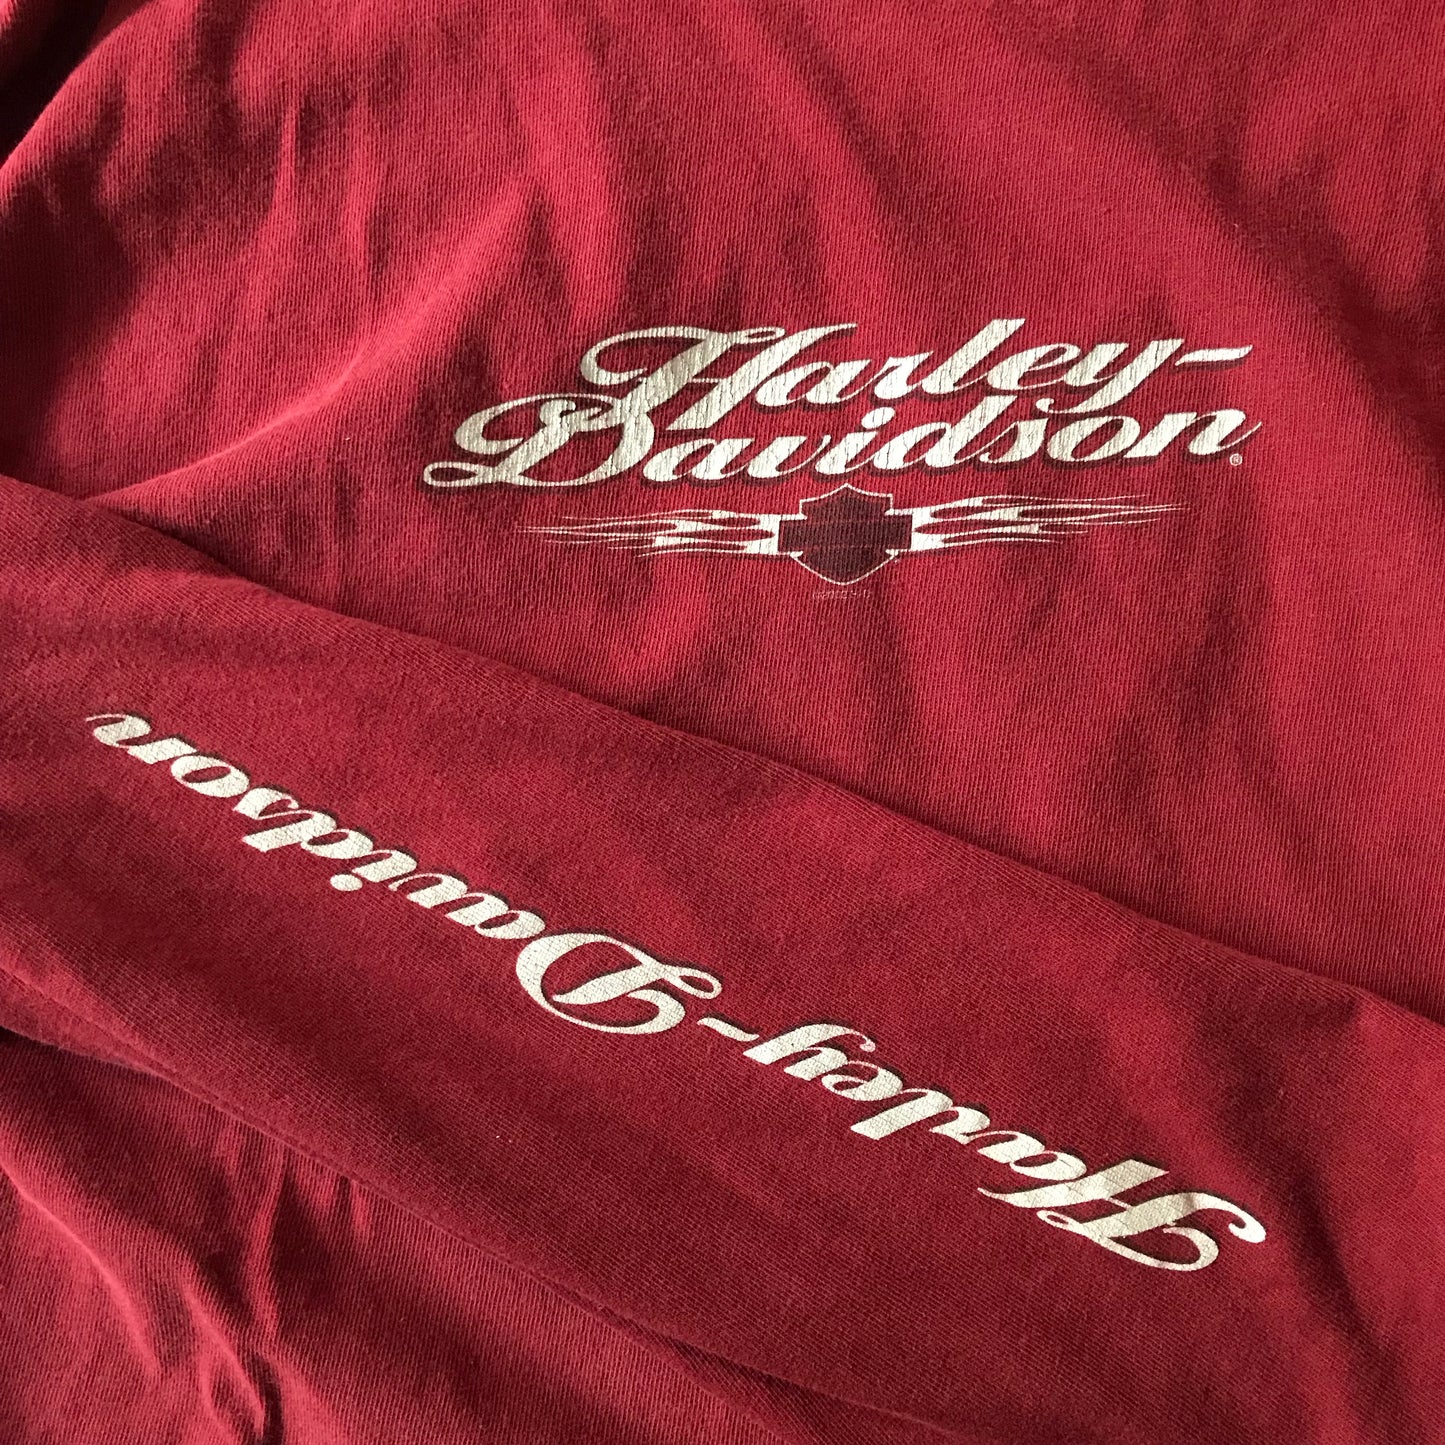 Harley Davidson Long Sleeve T-shirt